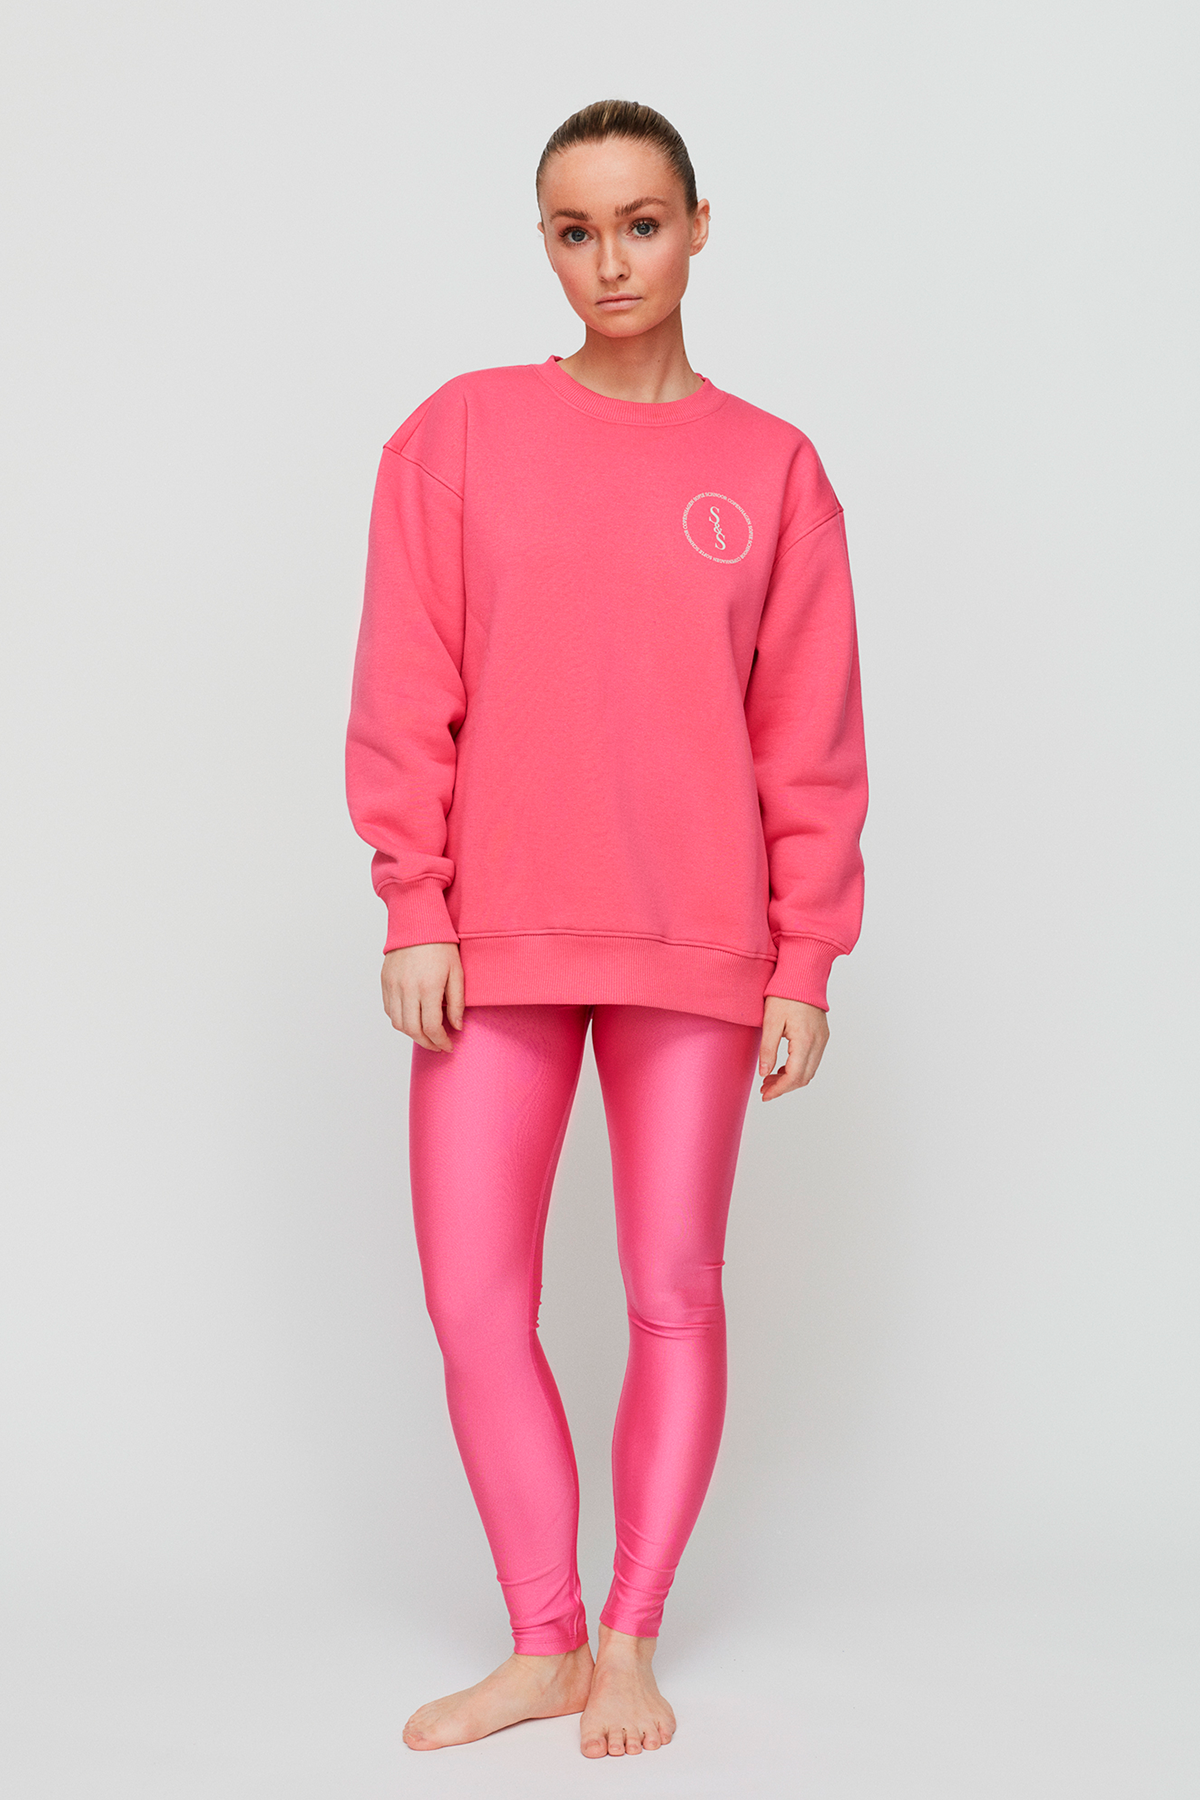 Sofie Schnoor Leggings S, Farve: Pink, Størrelse: S, Dame